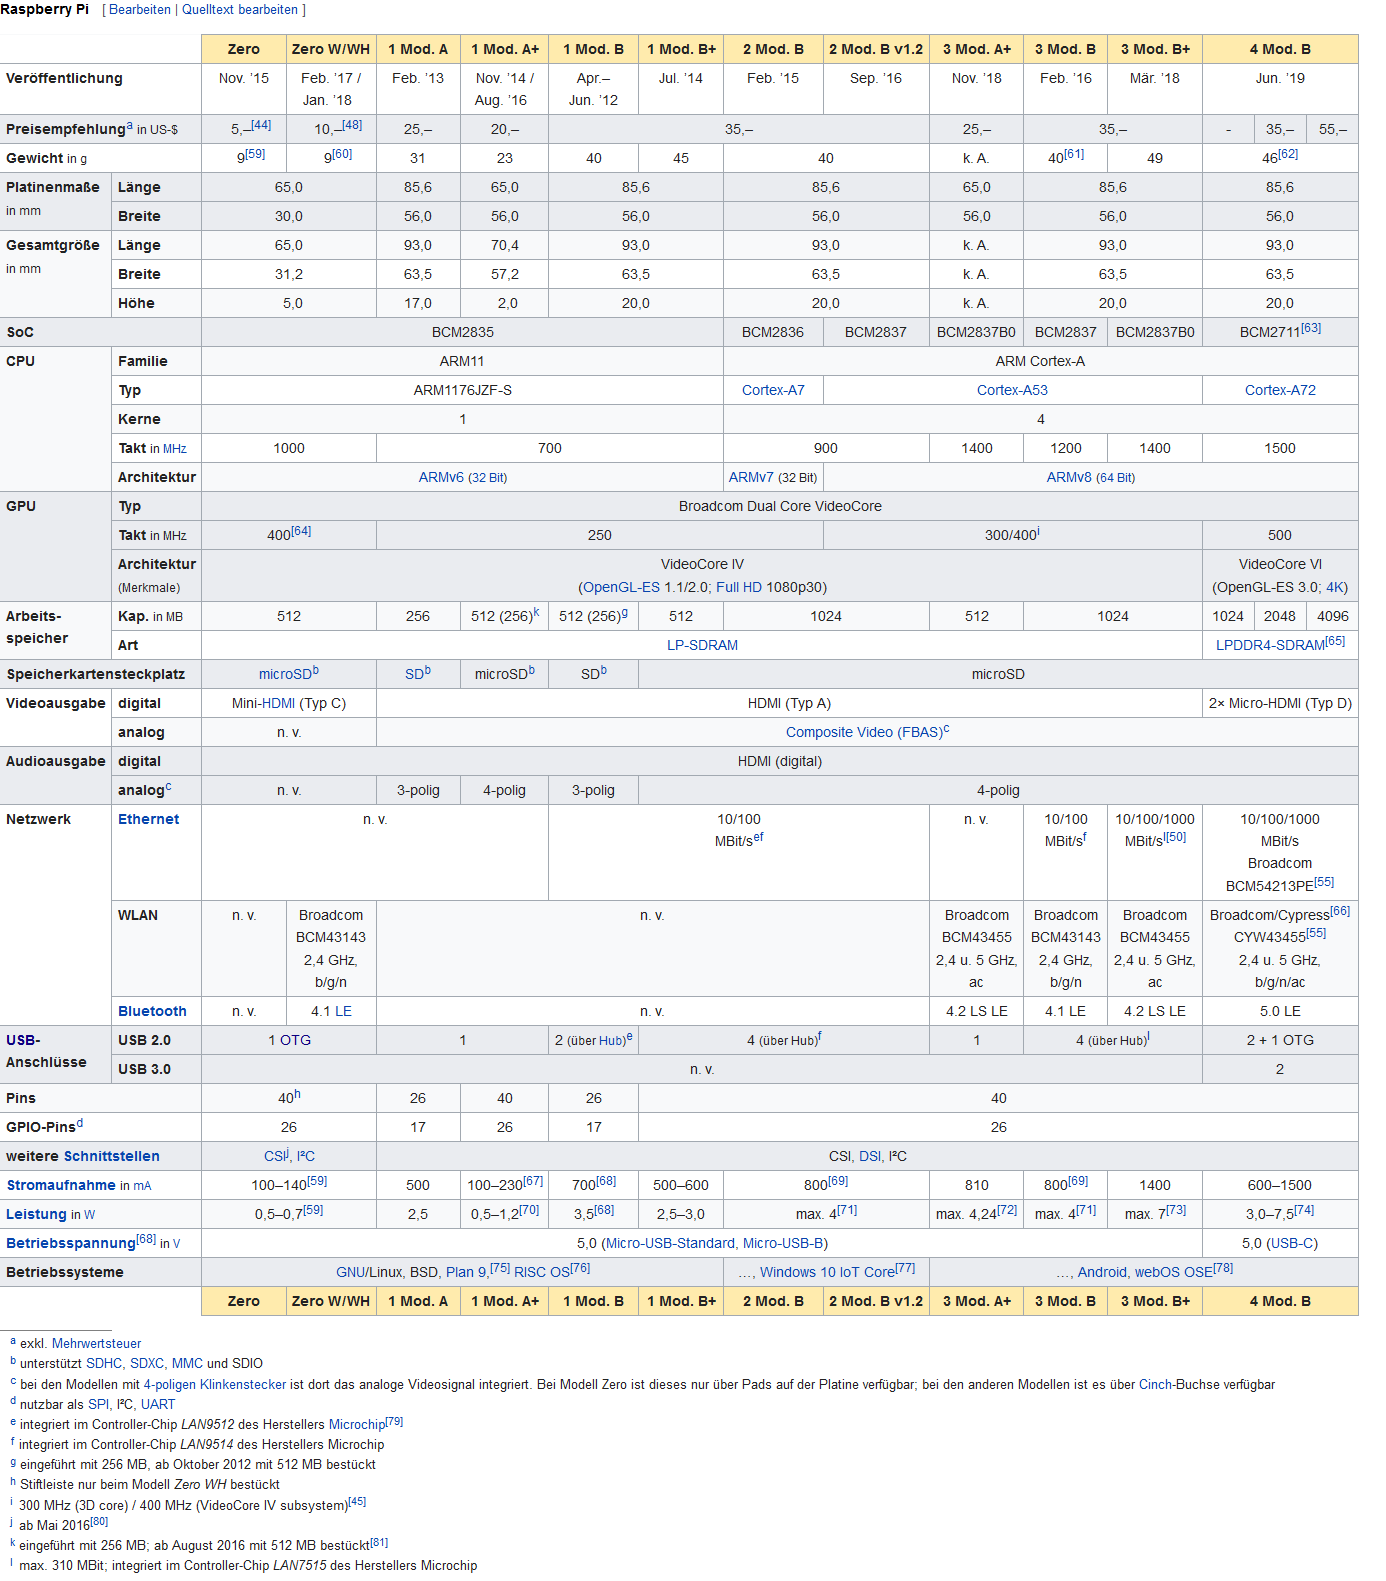 Raspi Spec Wikipedia Vergleich